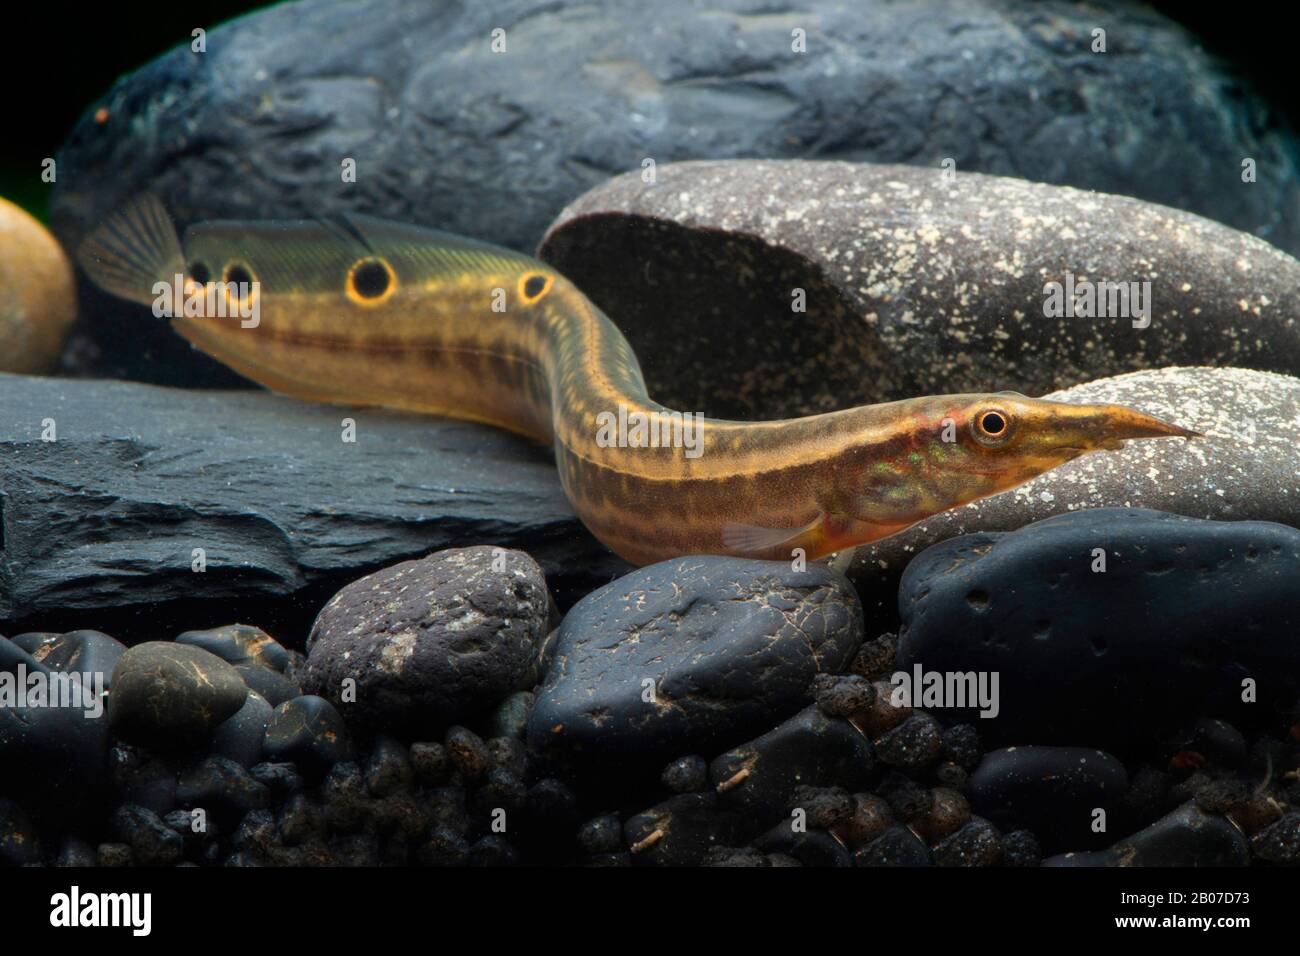 L'anguille de paon (Macrognathus siamensis), sur des pierres dans l'eau Banque D'Images